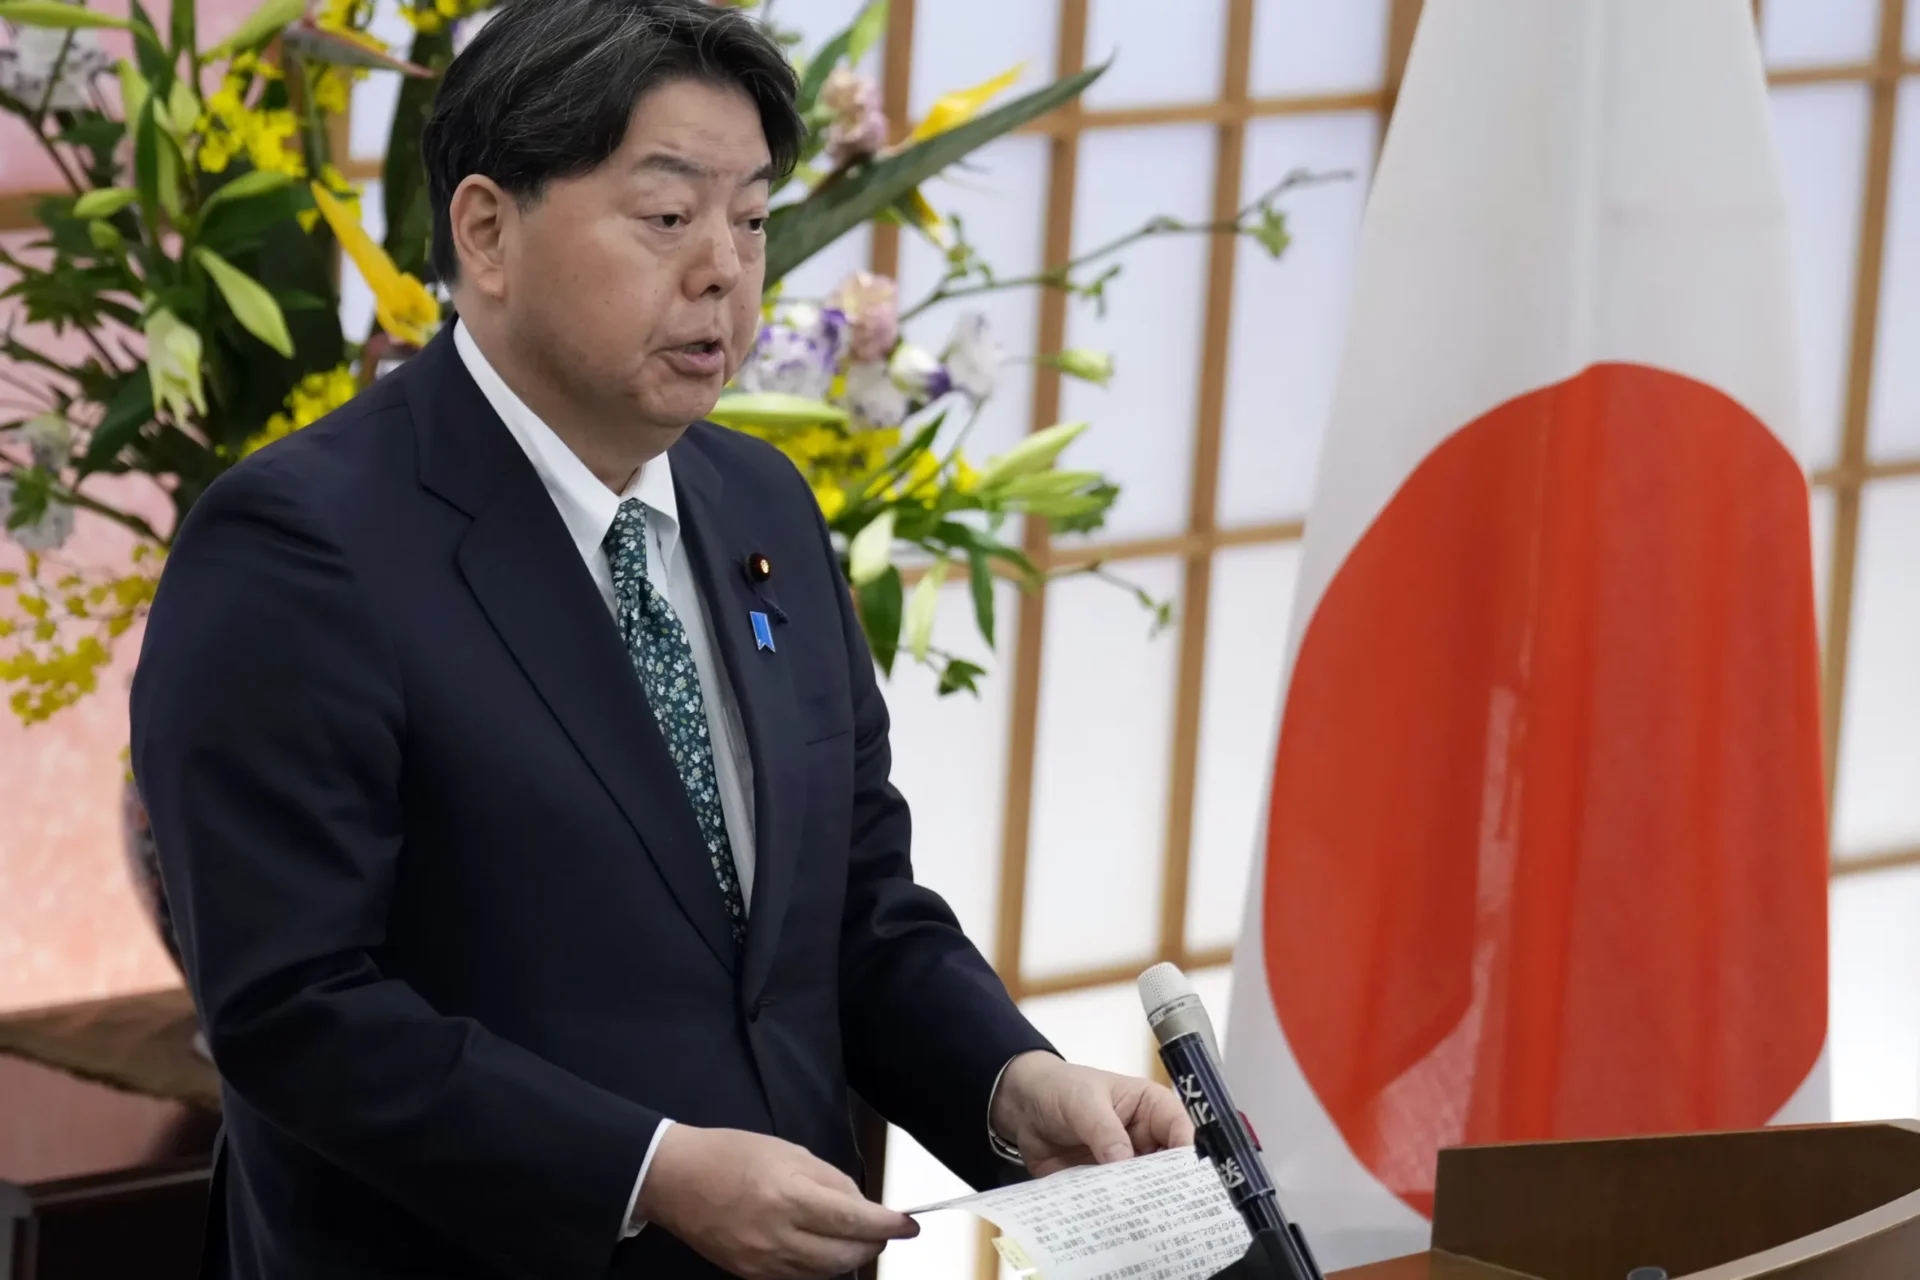 Japón FM visitará China mientras Tokio impone nuevos controles de exportación